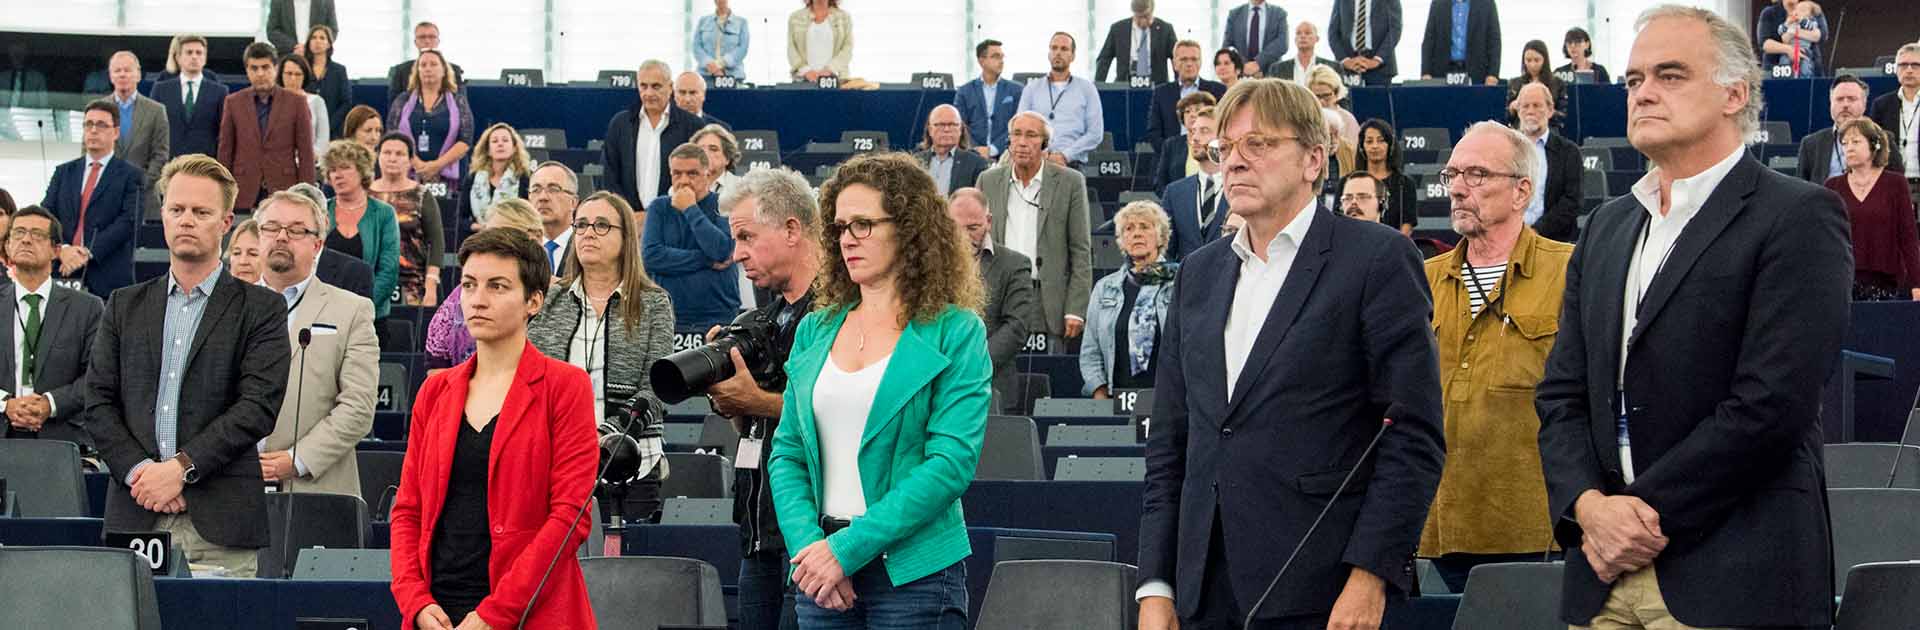 minuto de silencio en el parlamento europeo por las víctimas del atentado de Barcelona y Cambrils